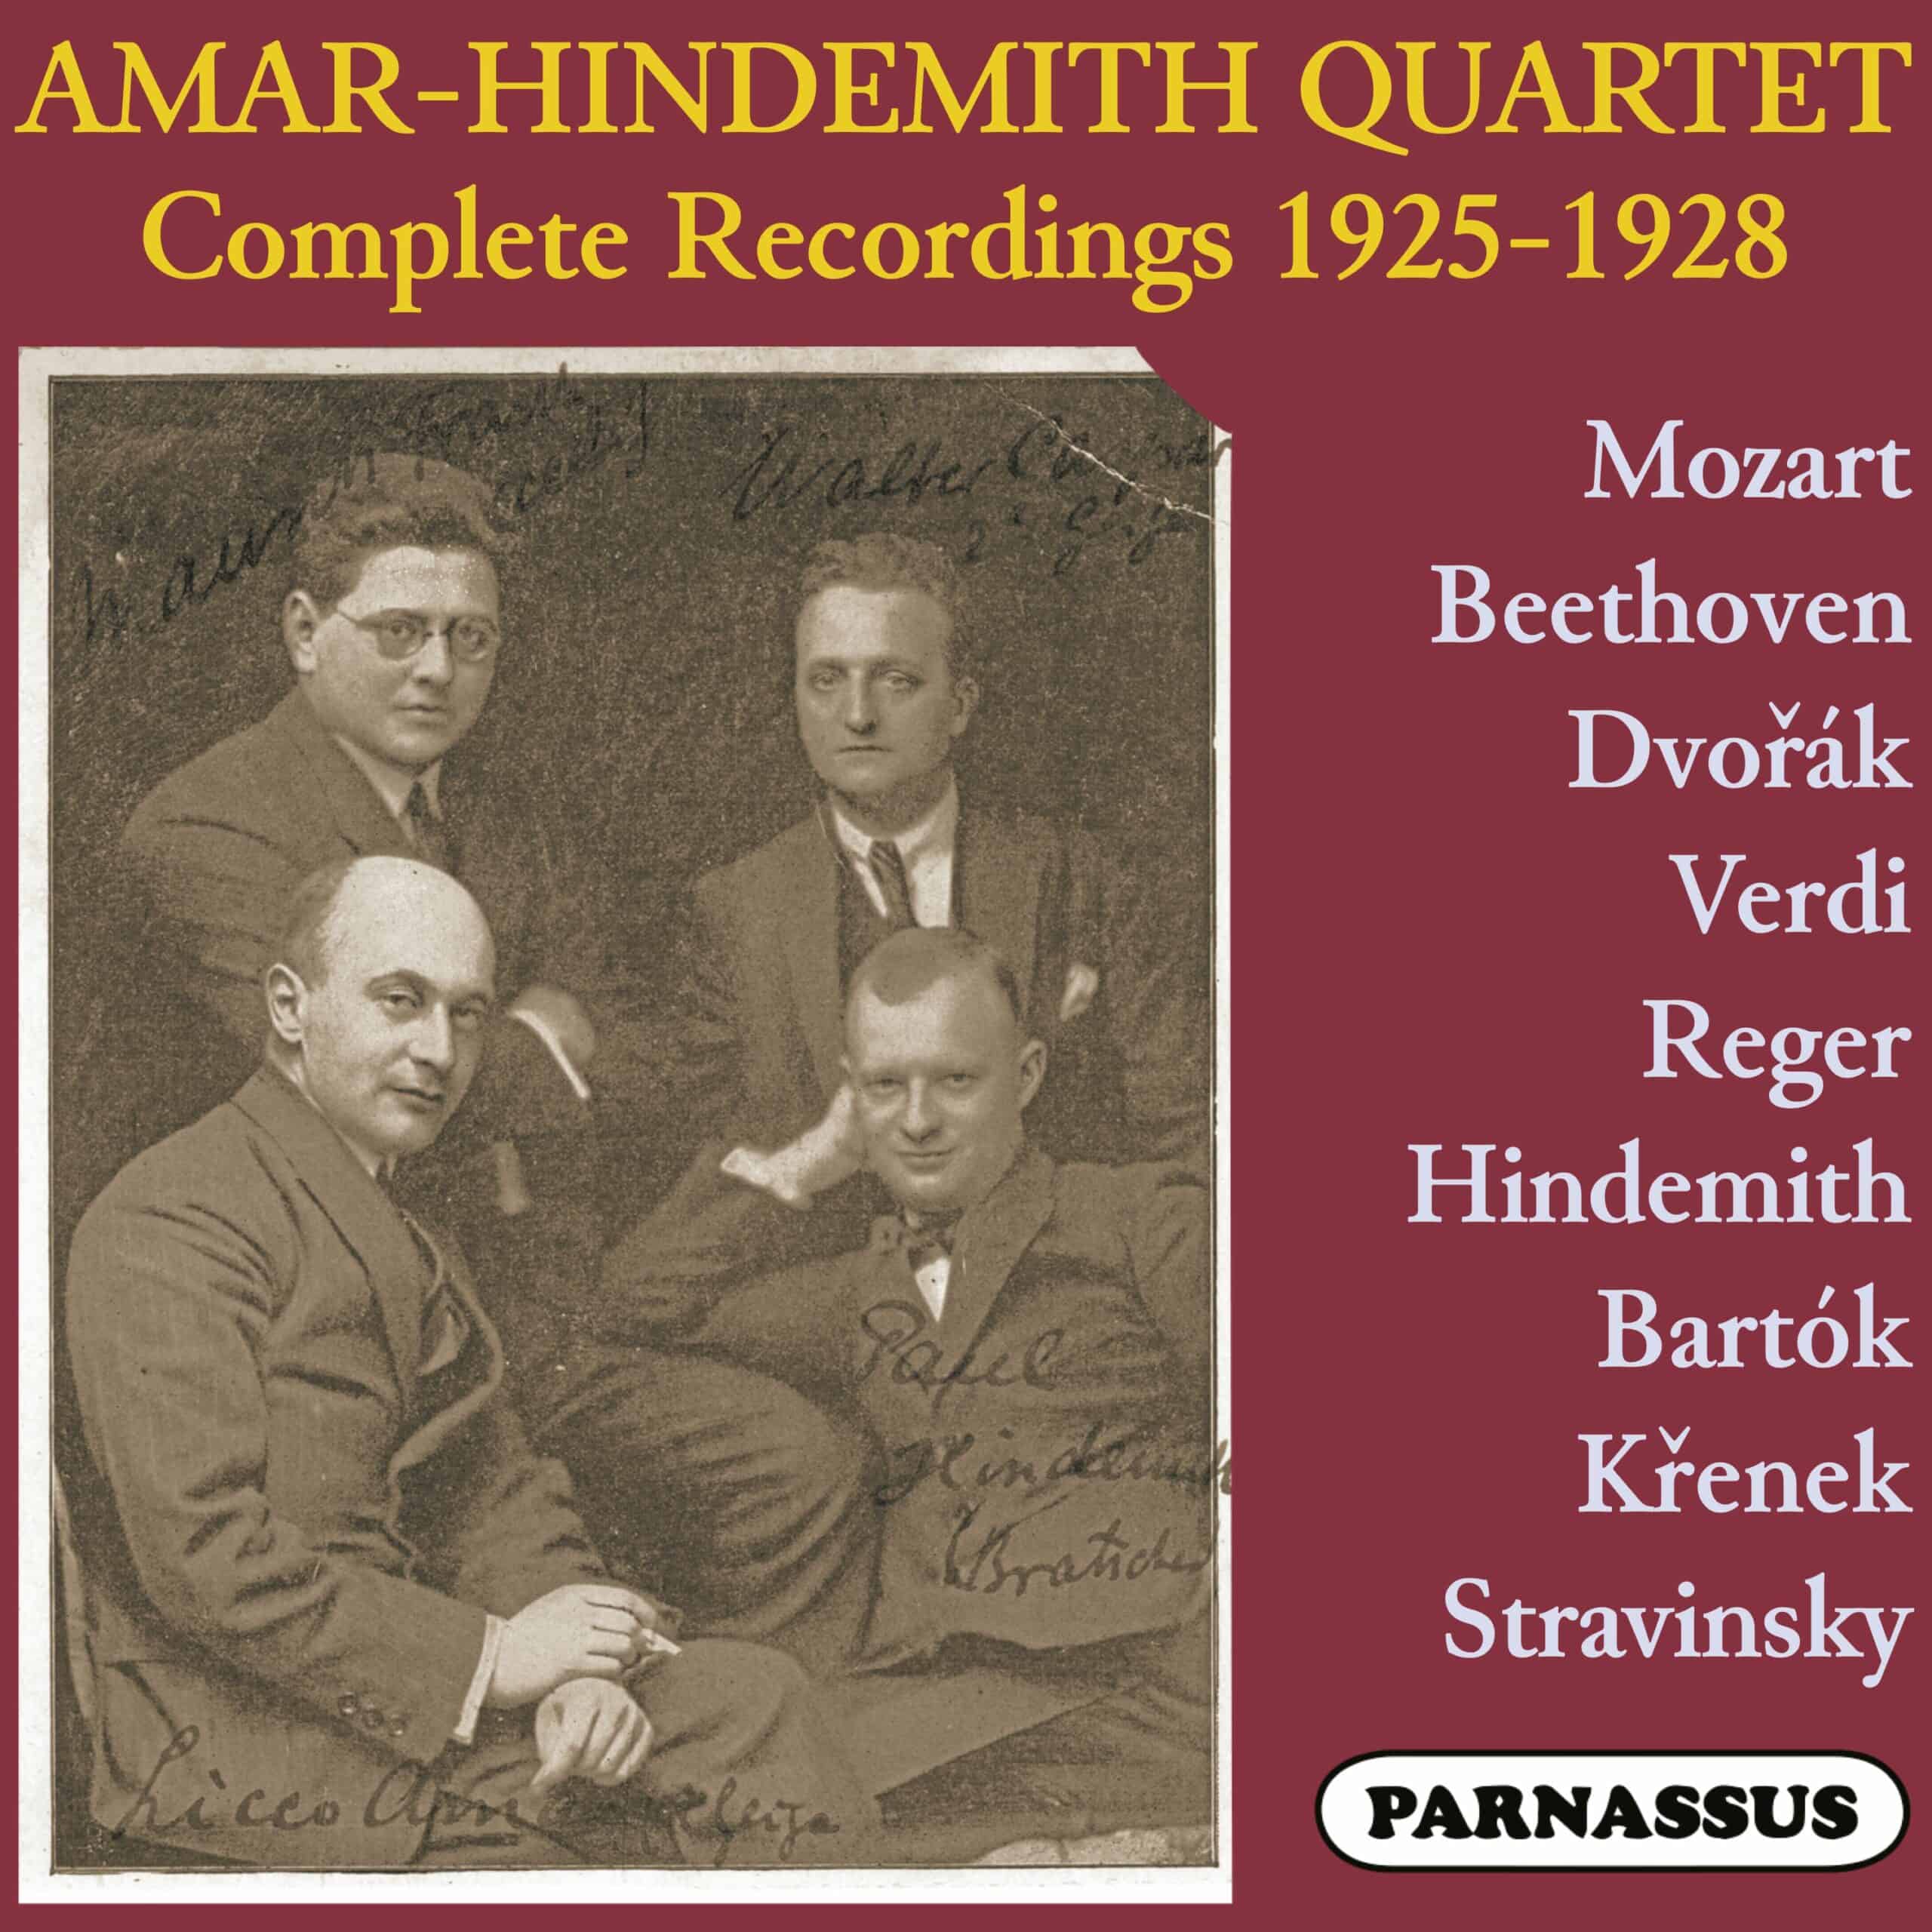 Amar-Hindemith Quartet Complete Recordings 1925-1928